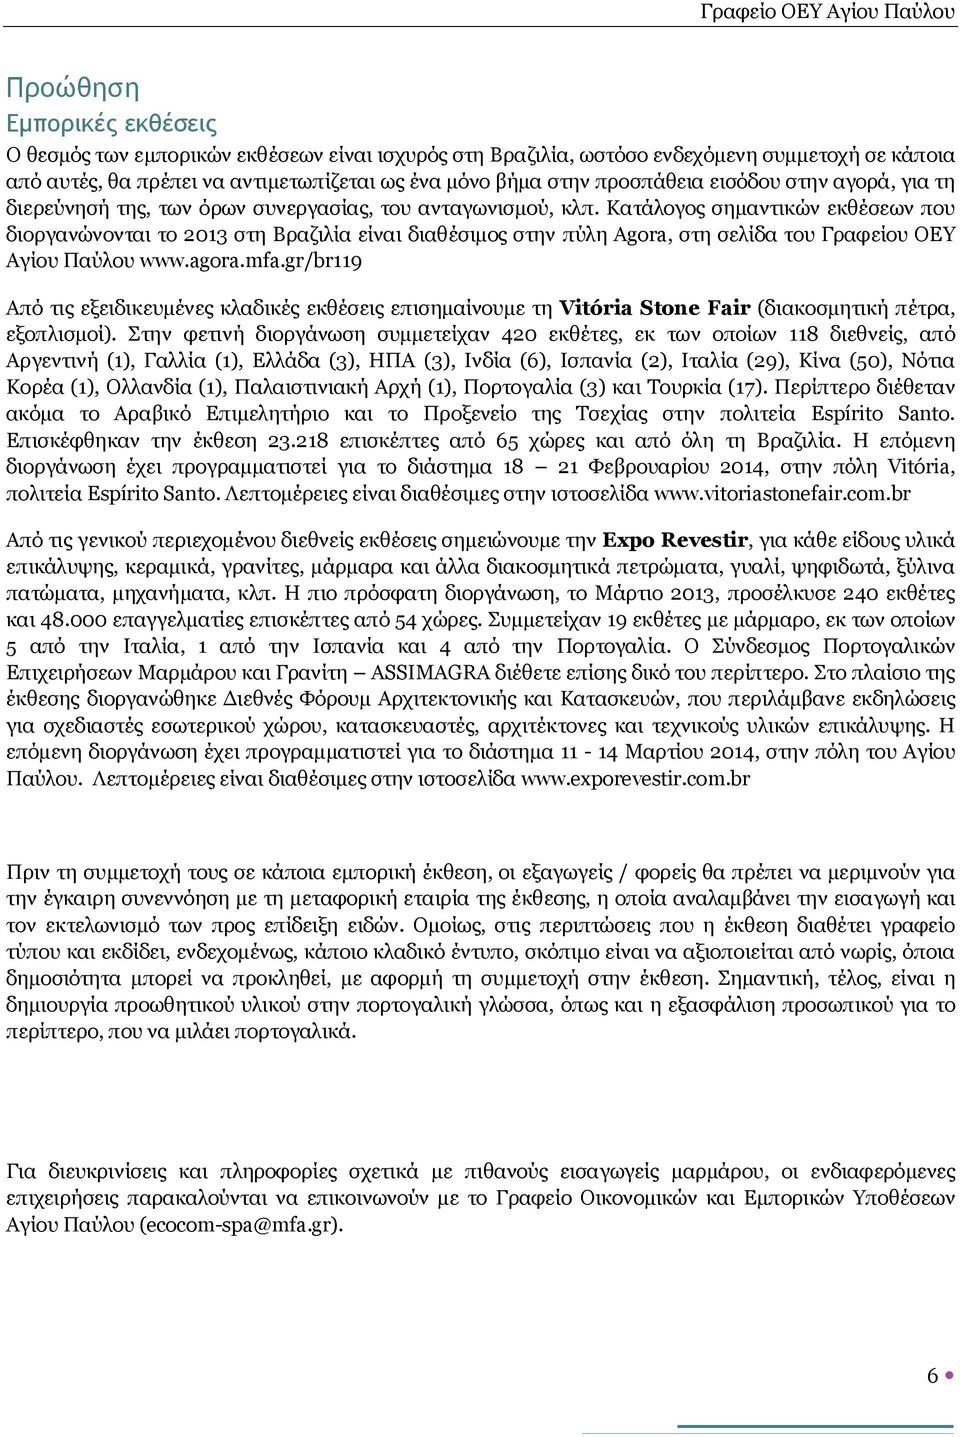 Κατάλογος σημαντικών εκθέσεων που διοργανώνονται το 2013 στη Βραζιλία είναι διαθέσιμος στην πύλη Agora, στη σελίδα του Γραφείου ΟΕΥ Αγίου Παύλου www.agora.mfa.